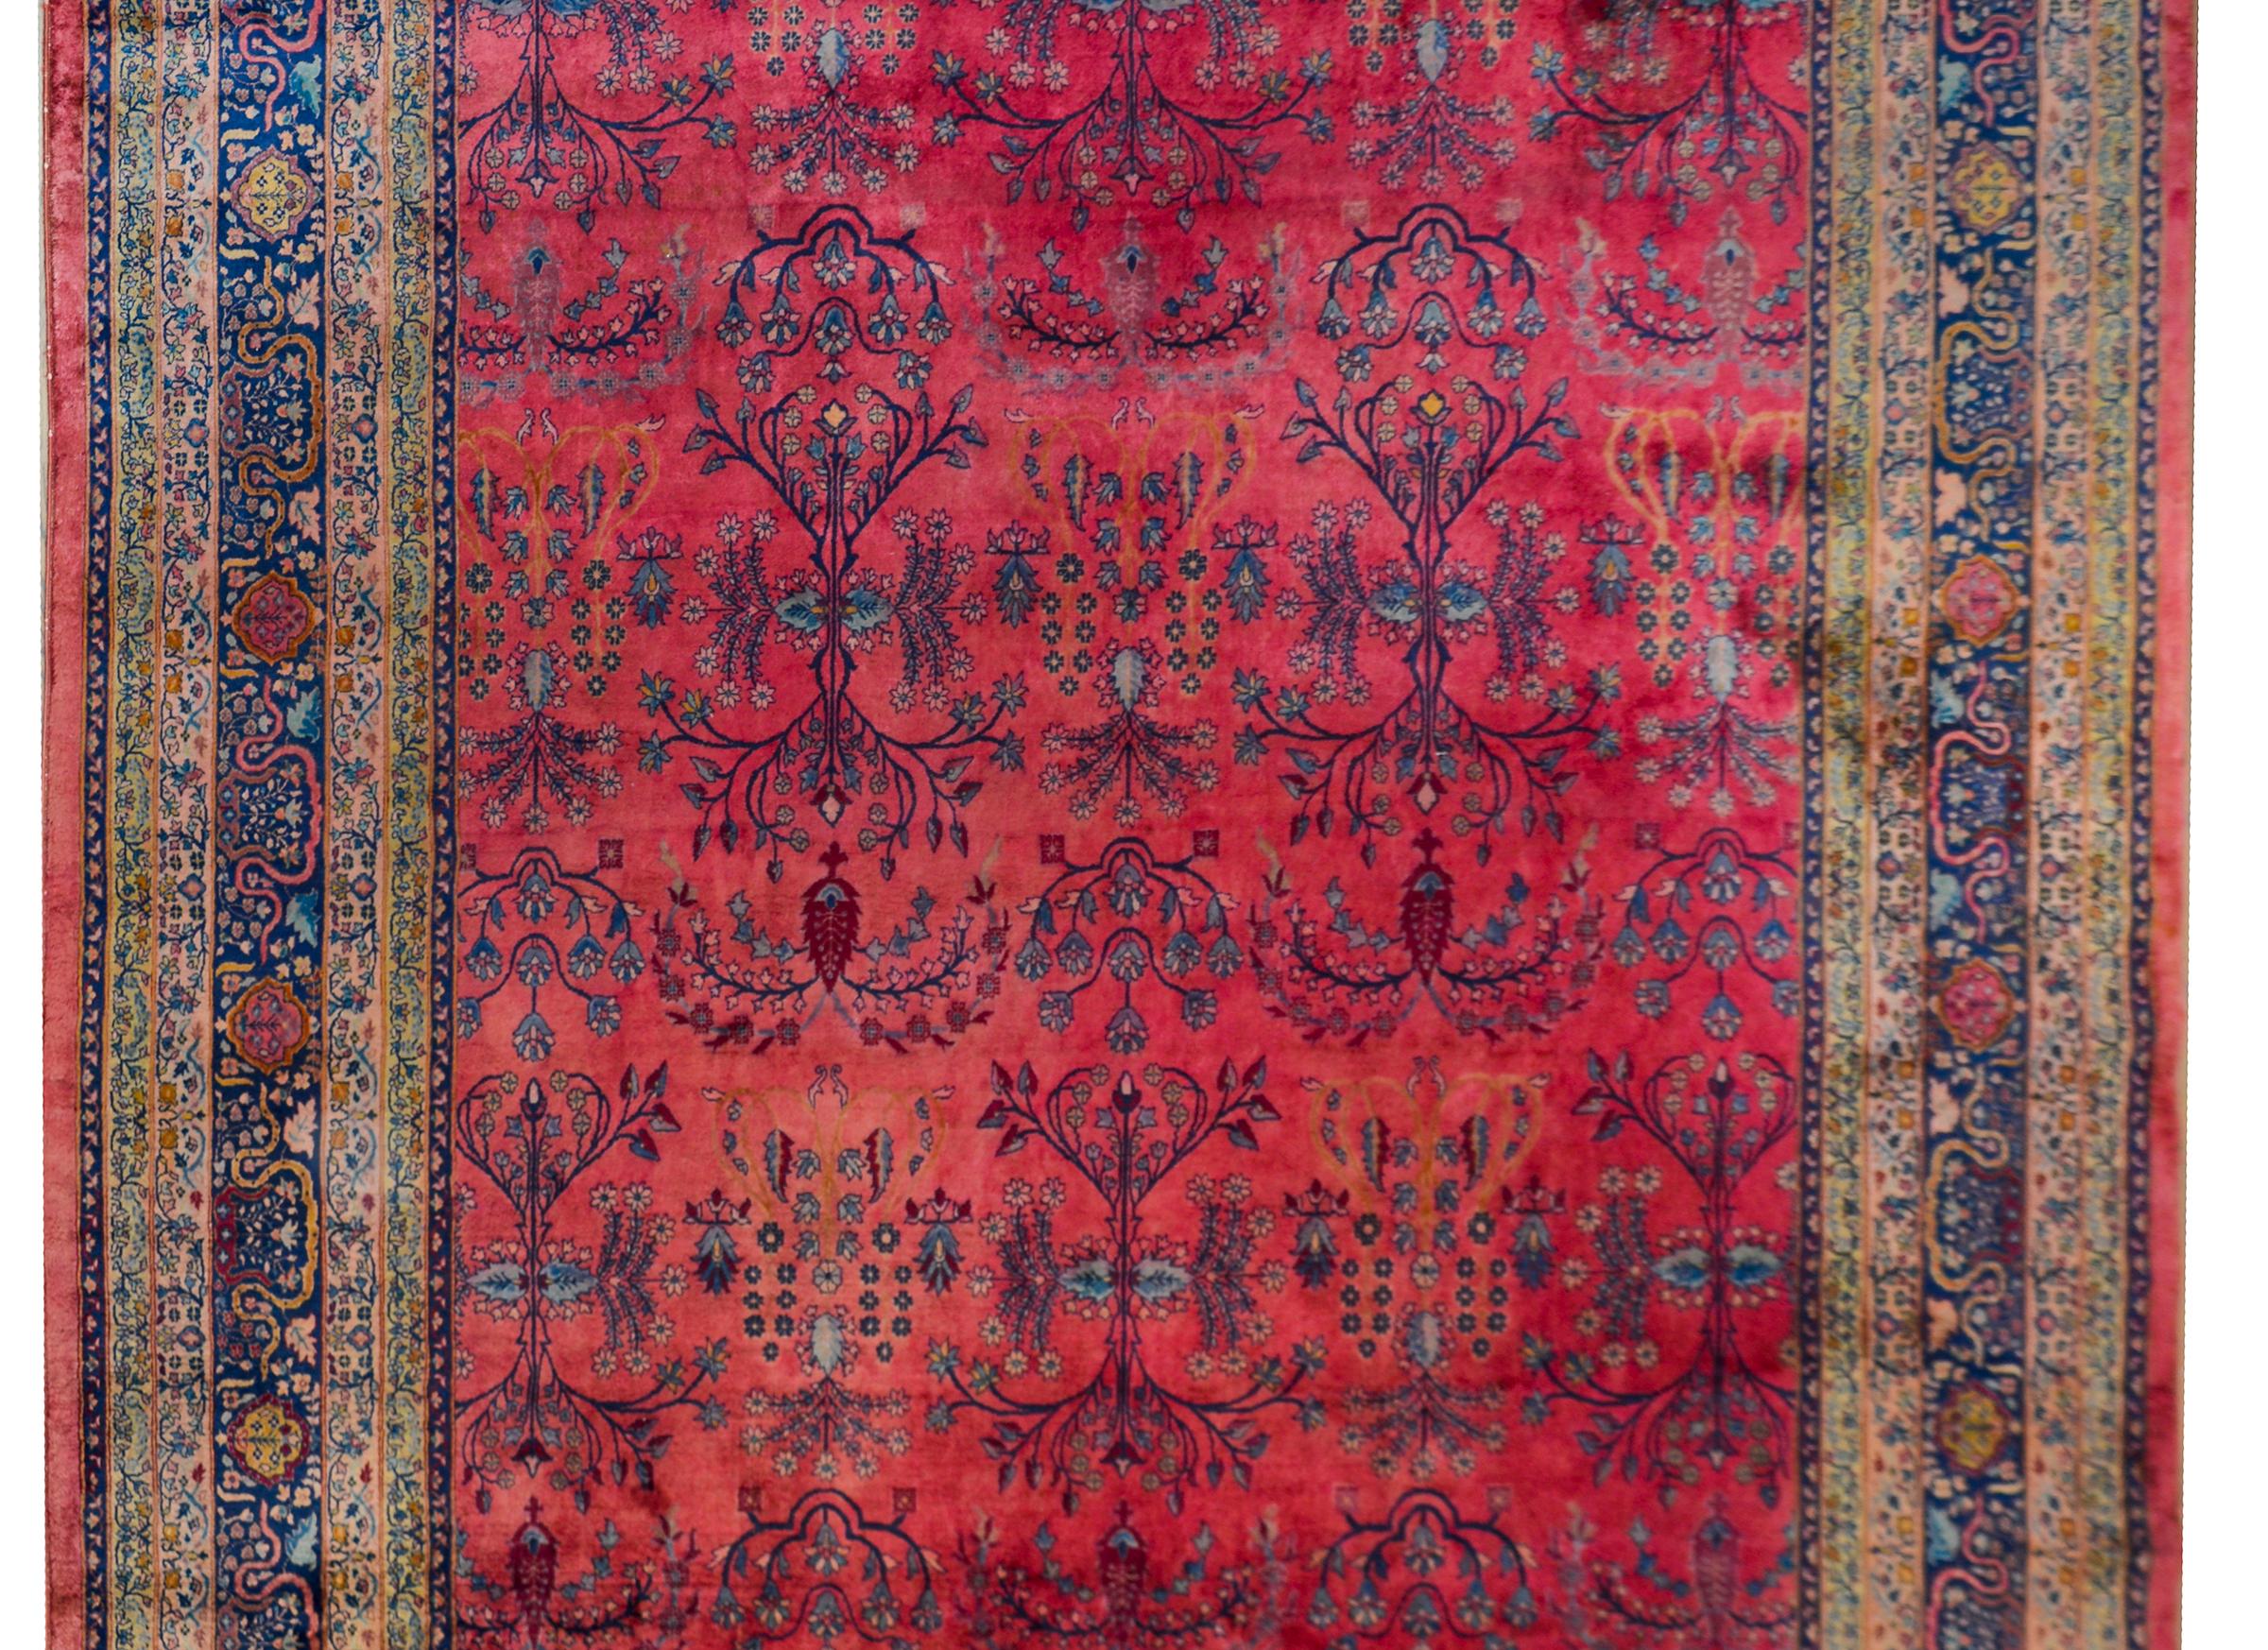 Superbe tapis indien Larestan du début du 20e siècle avec un motif de fleurs et de vignes de whisky tissé en indigo clair et foncé, crème et rose sur un fond fuchsia abrache. La bordure est complexe avec de multiples bordures étroites avec de petits